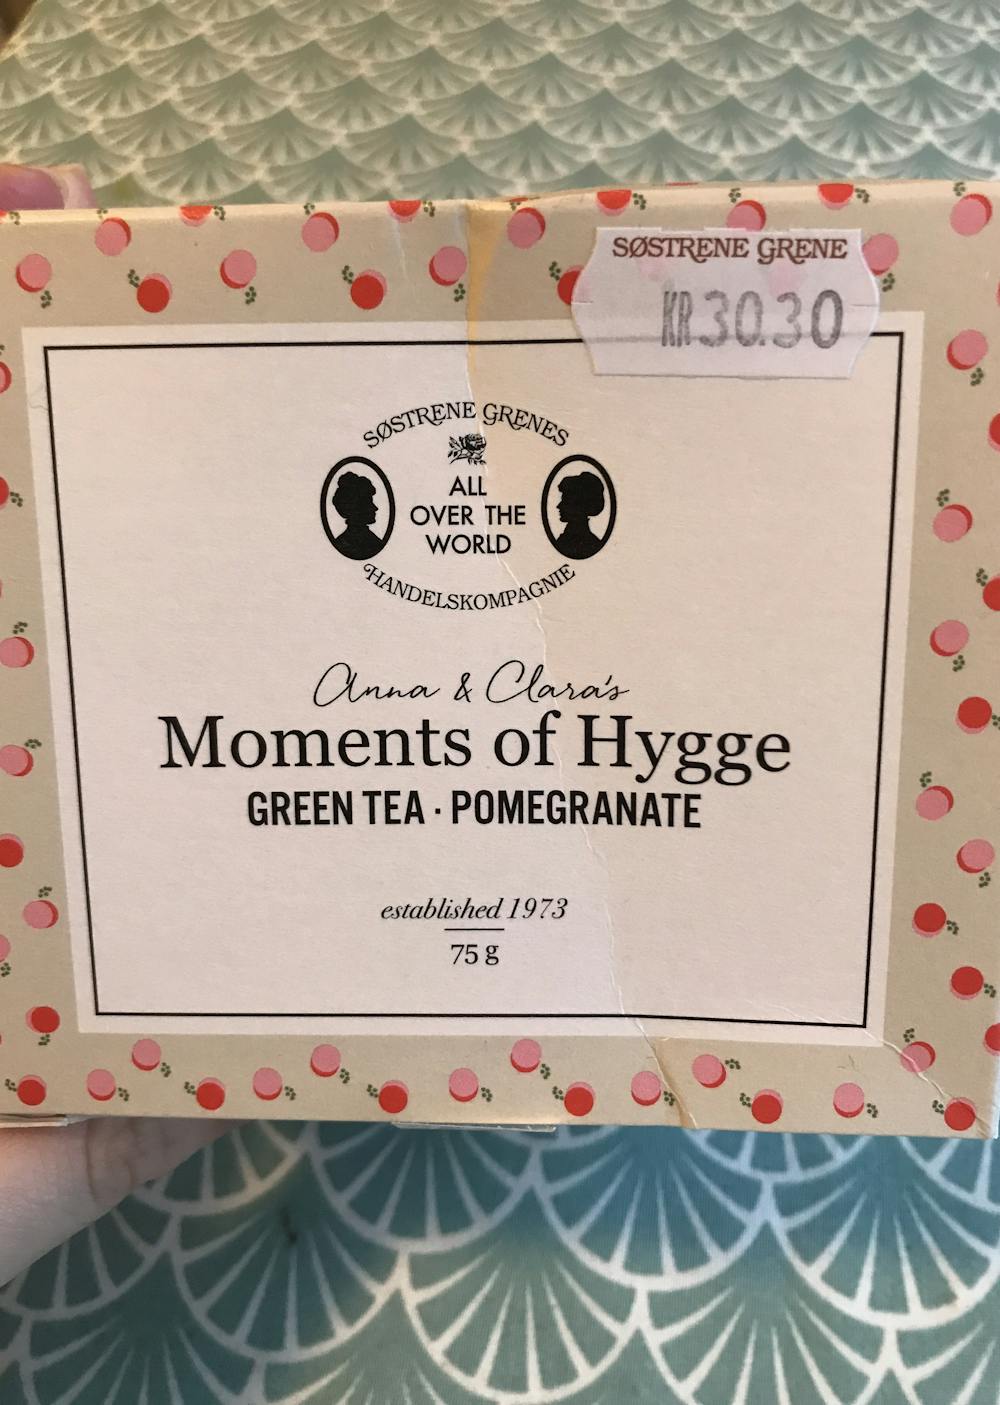 Moments of hygge, green tea & pomegranate, Søstrene grene